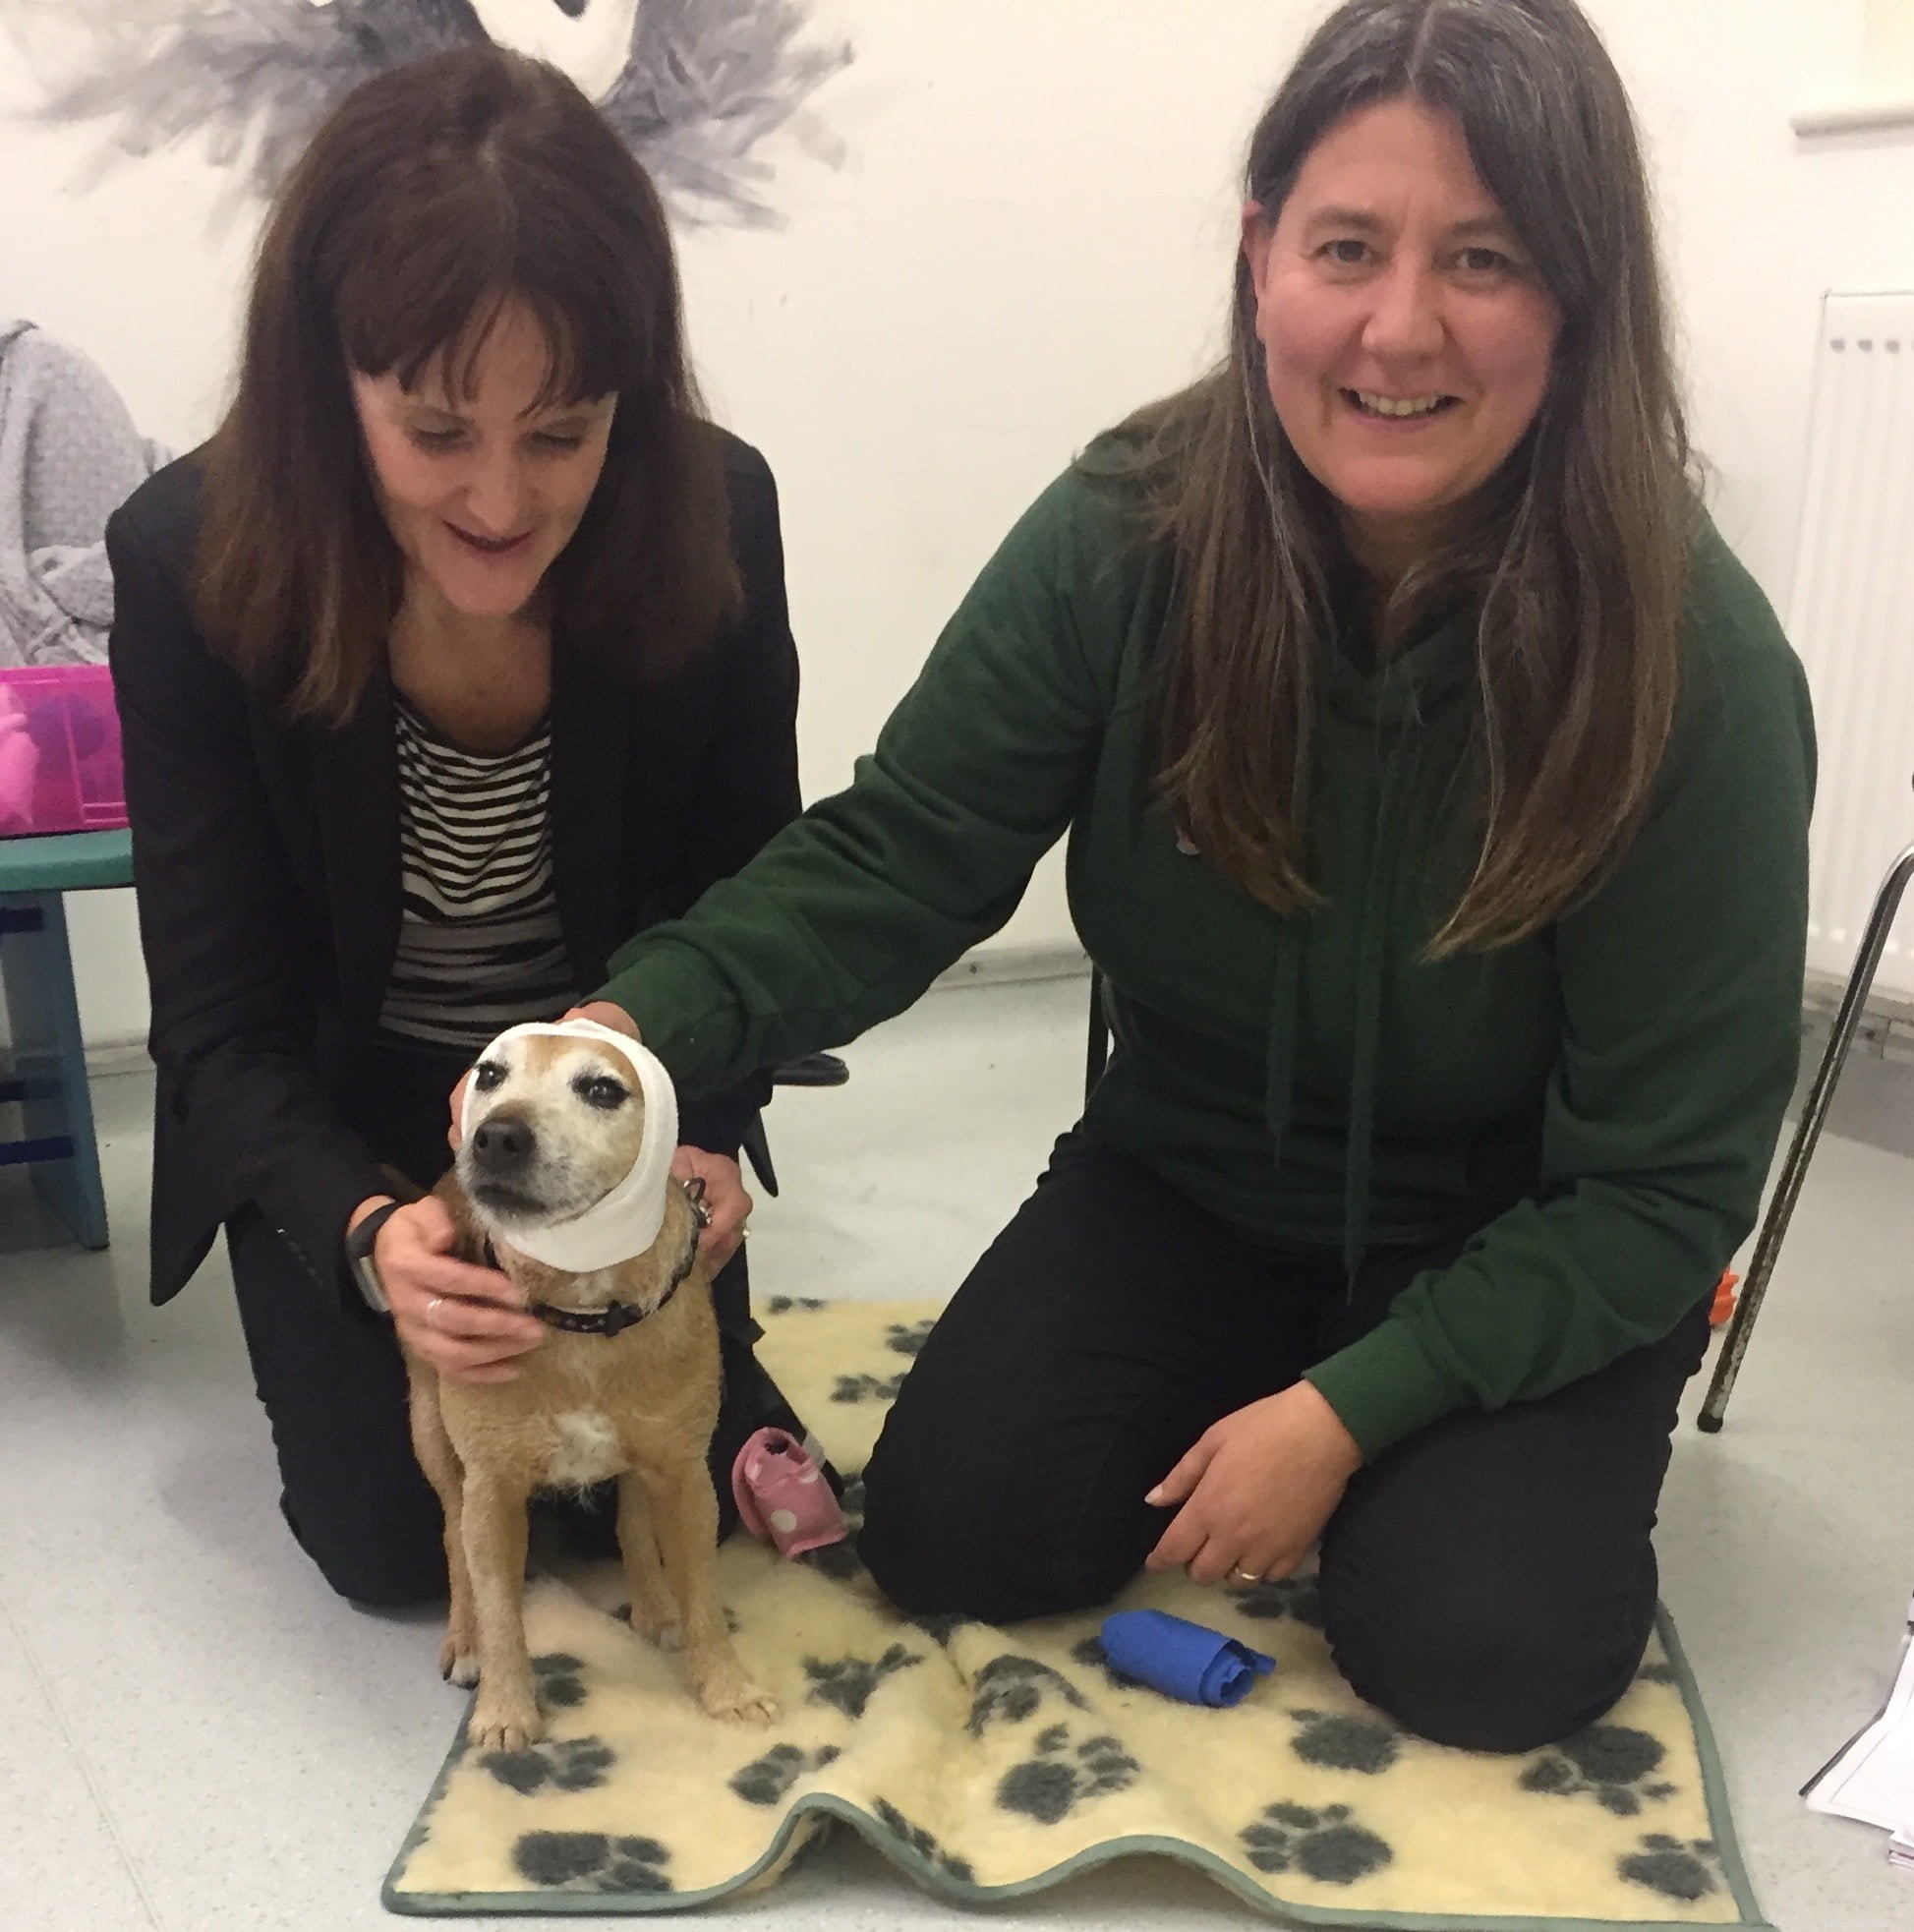 Conselhos que salvam vidas para donos de cães da especialista em primeiros socorros caninos Rachel Bean